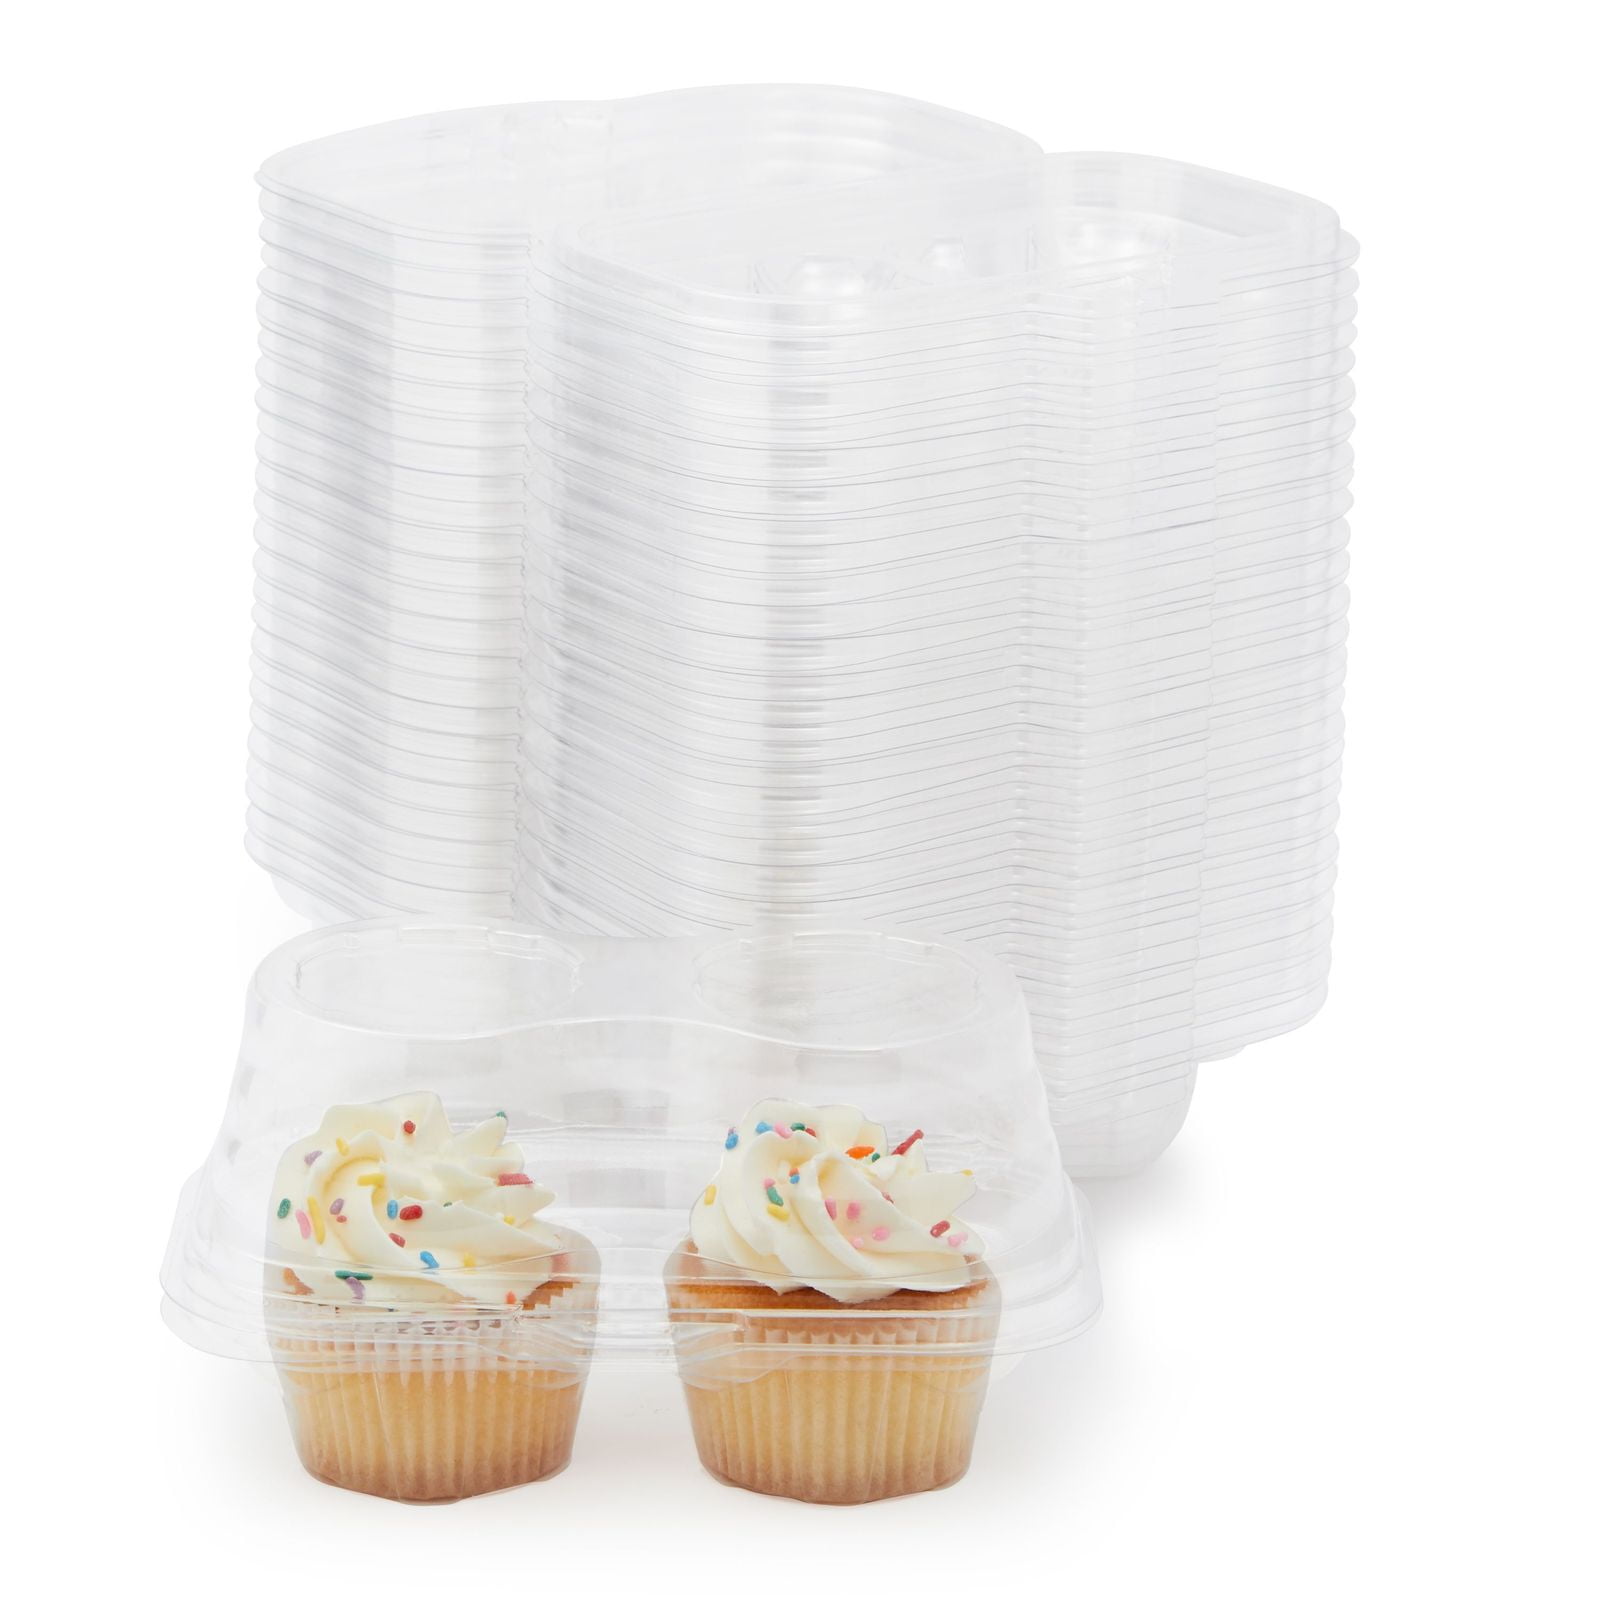 10X Plastic Single Compartment Cupcake Muffin Dome Box Container 24 x 24 x 8cm 